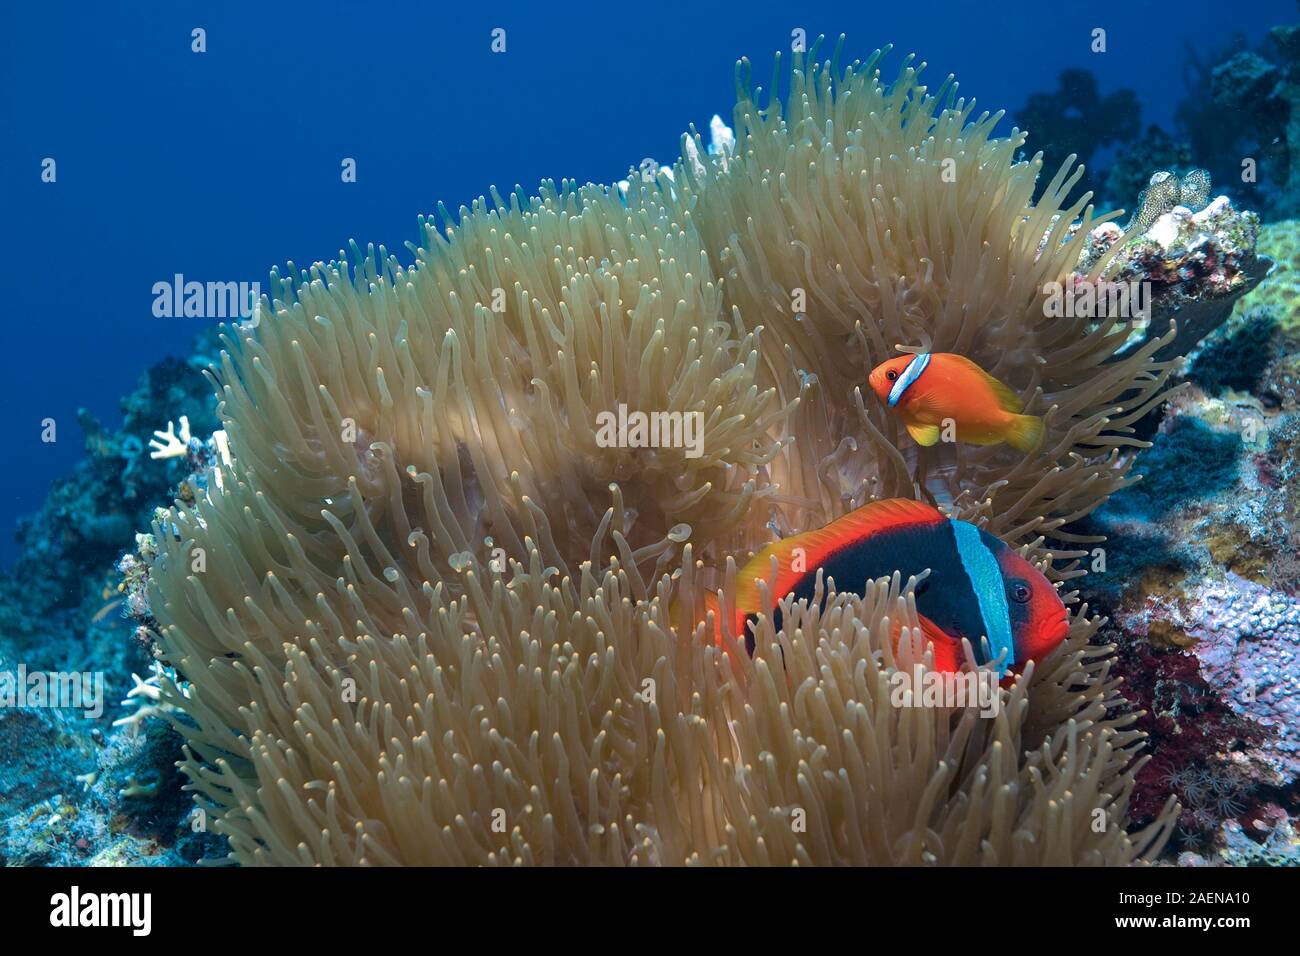 Redfin anemonefish o imbrigliati anemonefish (Amphiprion frenatus) vive in symbiose con Le attinie, Sabang Beach, Mindoro, Filippine Foto Stock